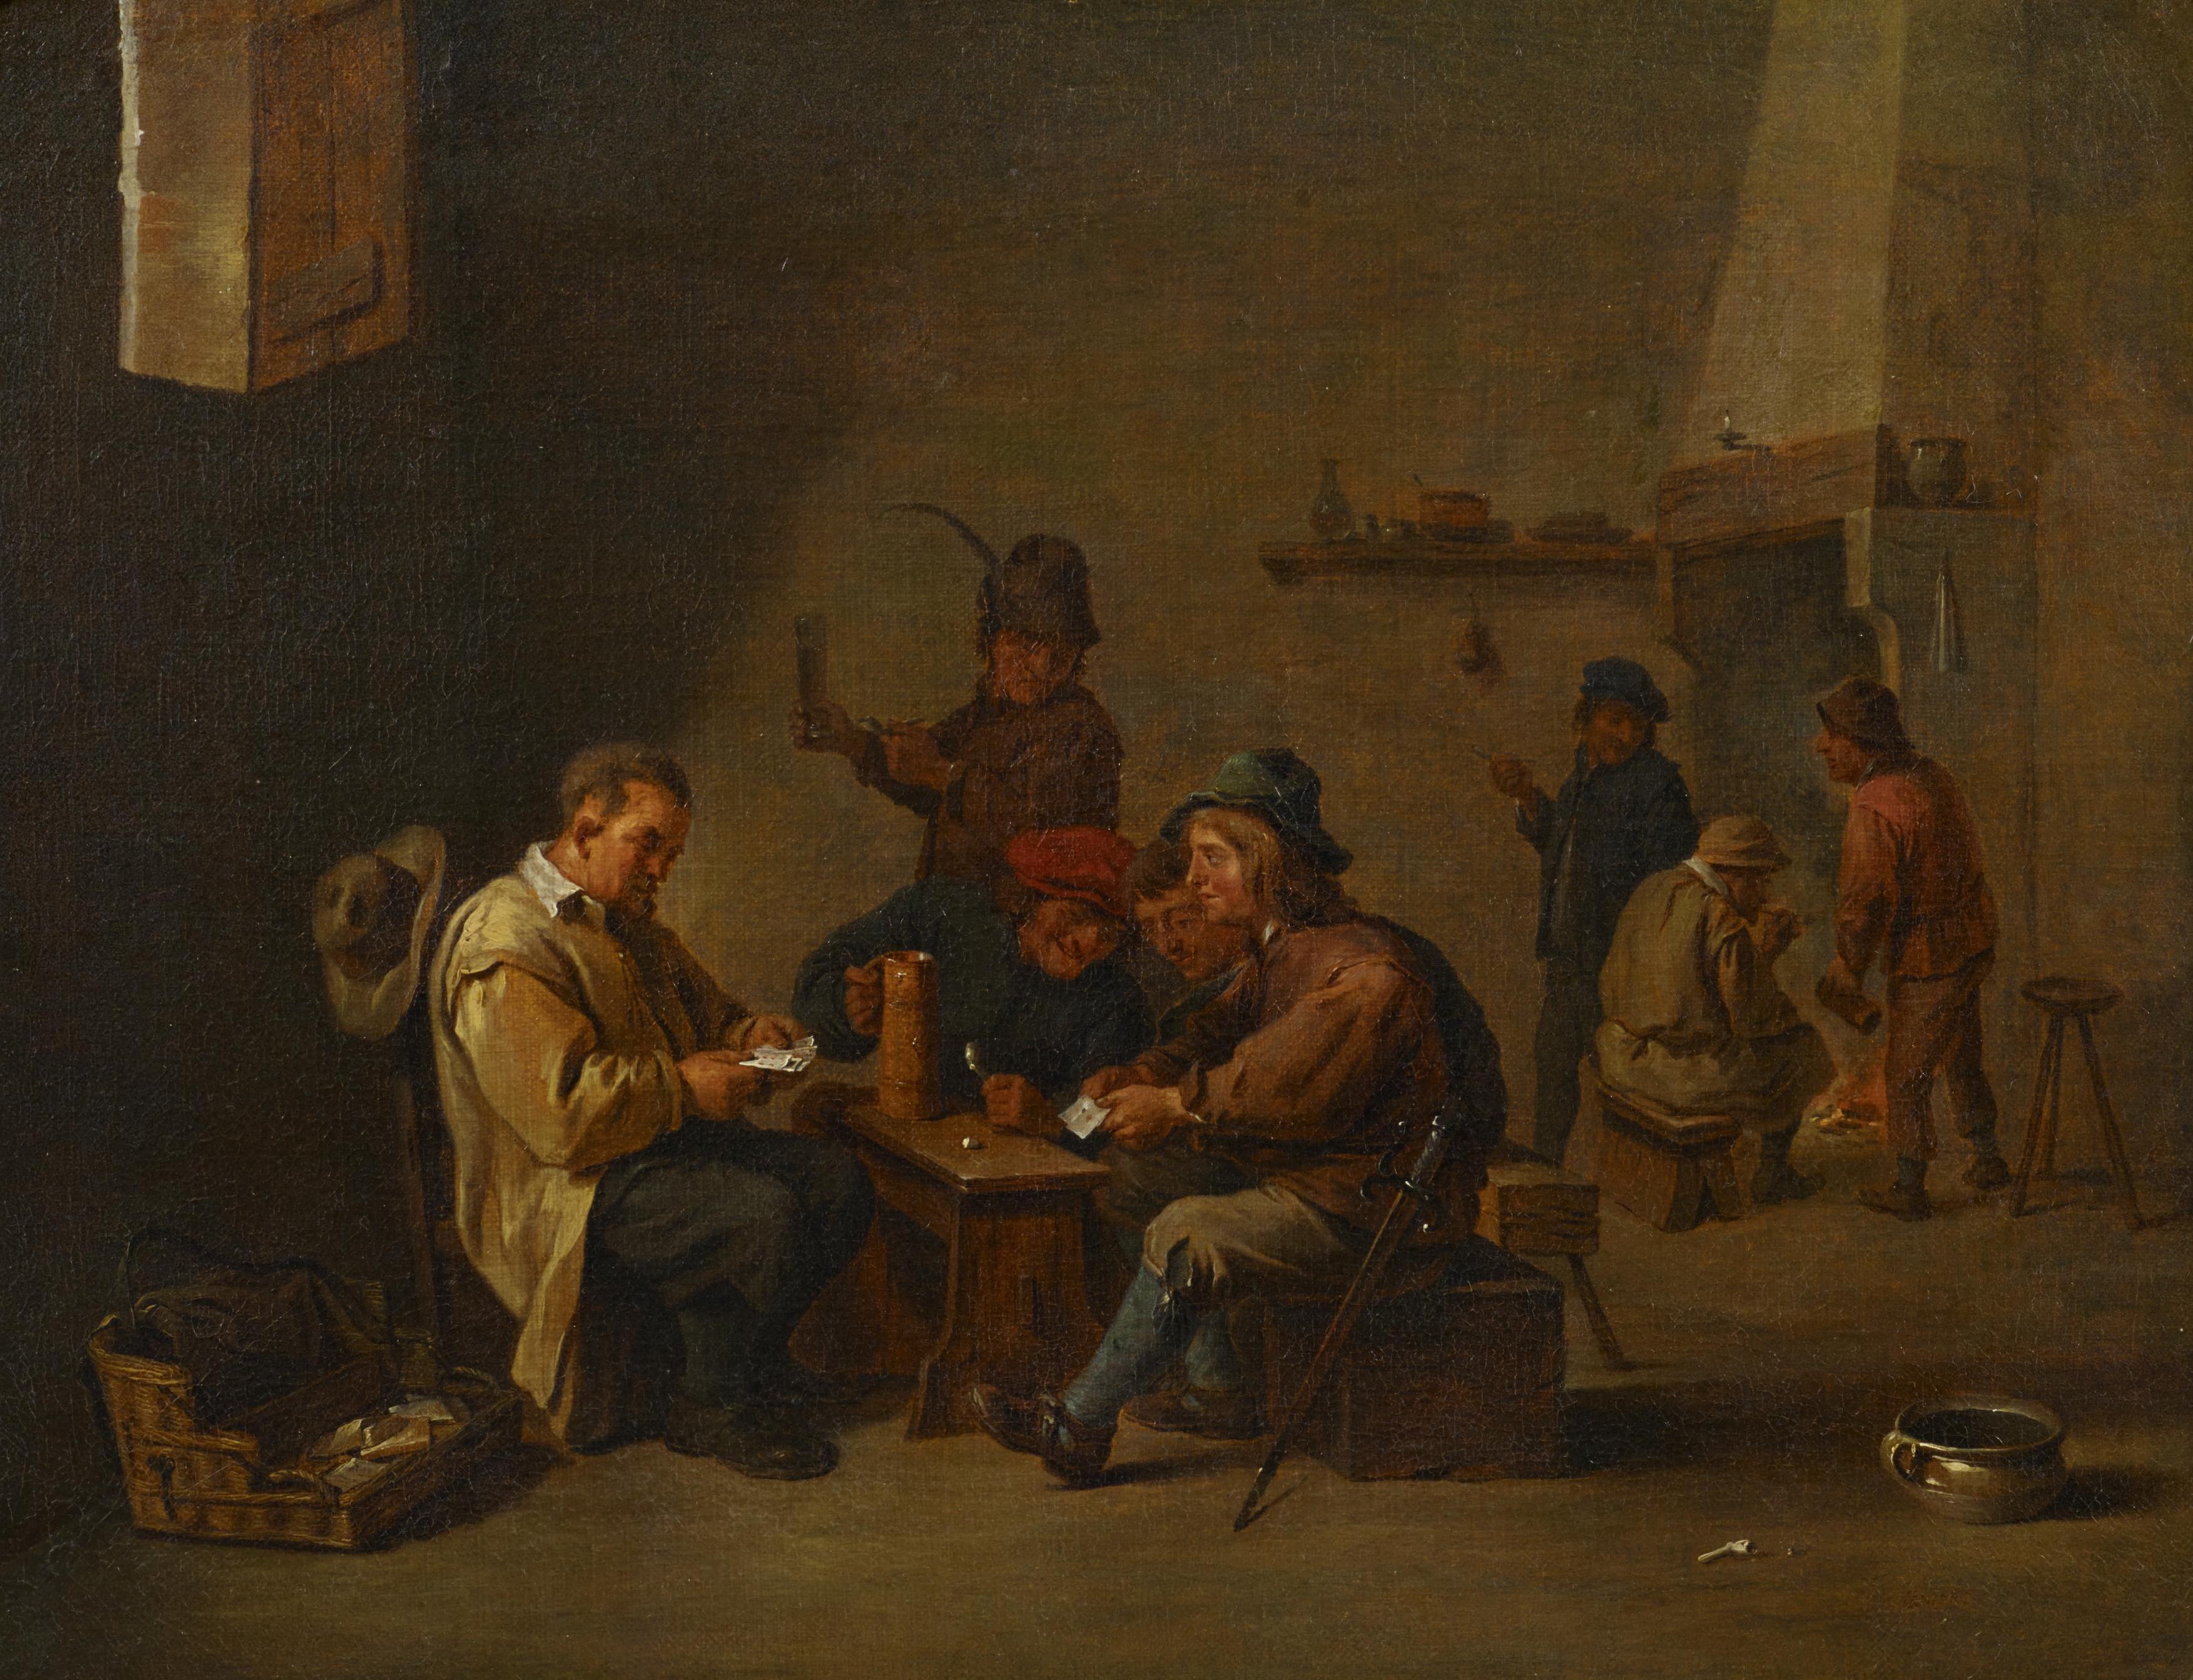 David dJ Teniers - Auktion 479 Los 60, 68416-34, Van Ham Kunstauktionen